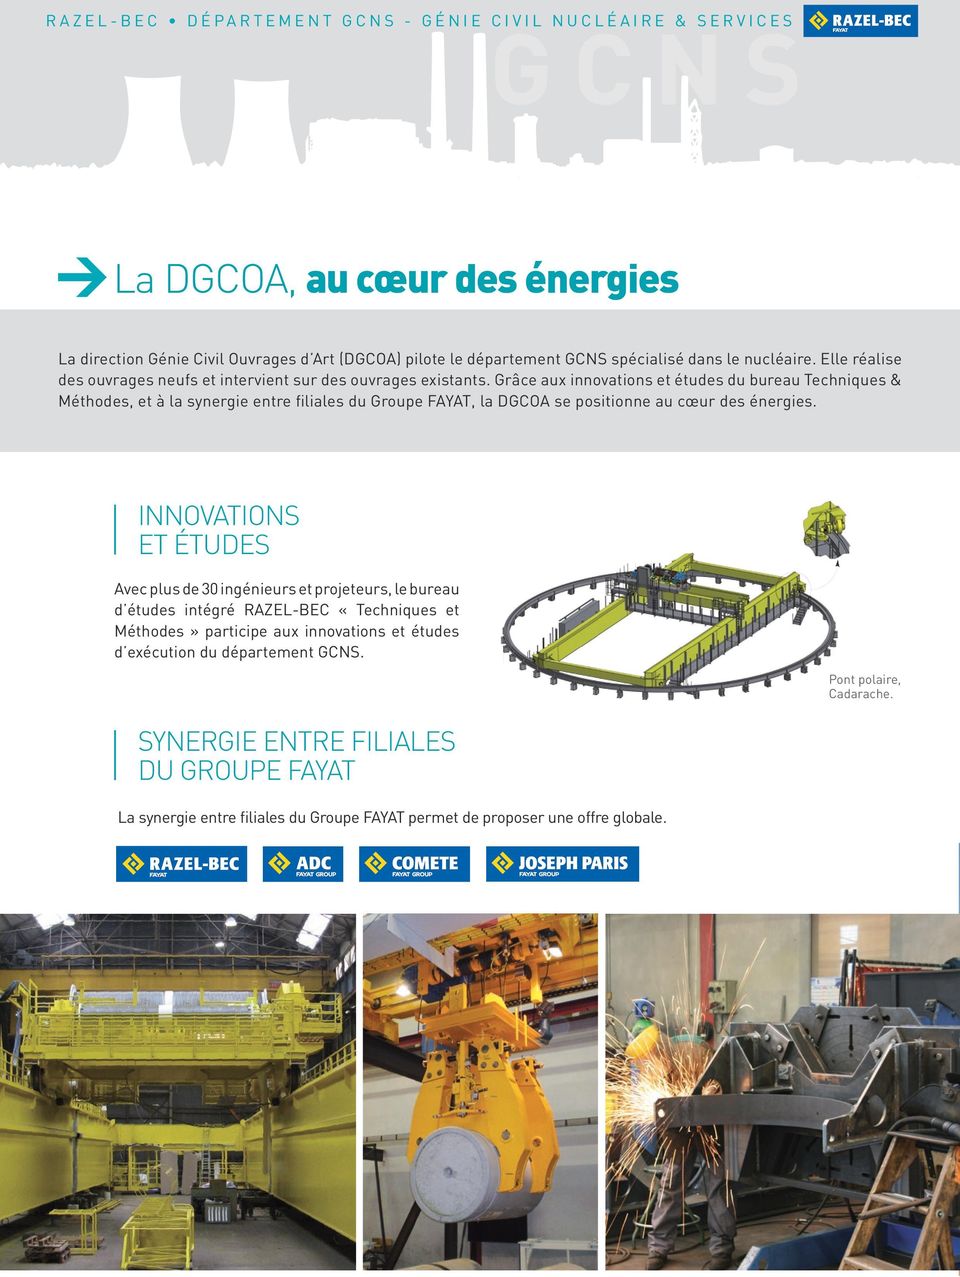 Grâce aux innovations et études du bureau Techniques & Méthodes, et à la synergie entre filiales du Groupe FAYAT, la DGCOA se positionne au cœur des énergies.